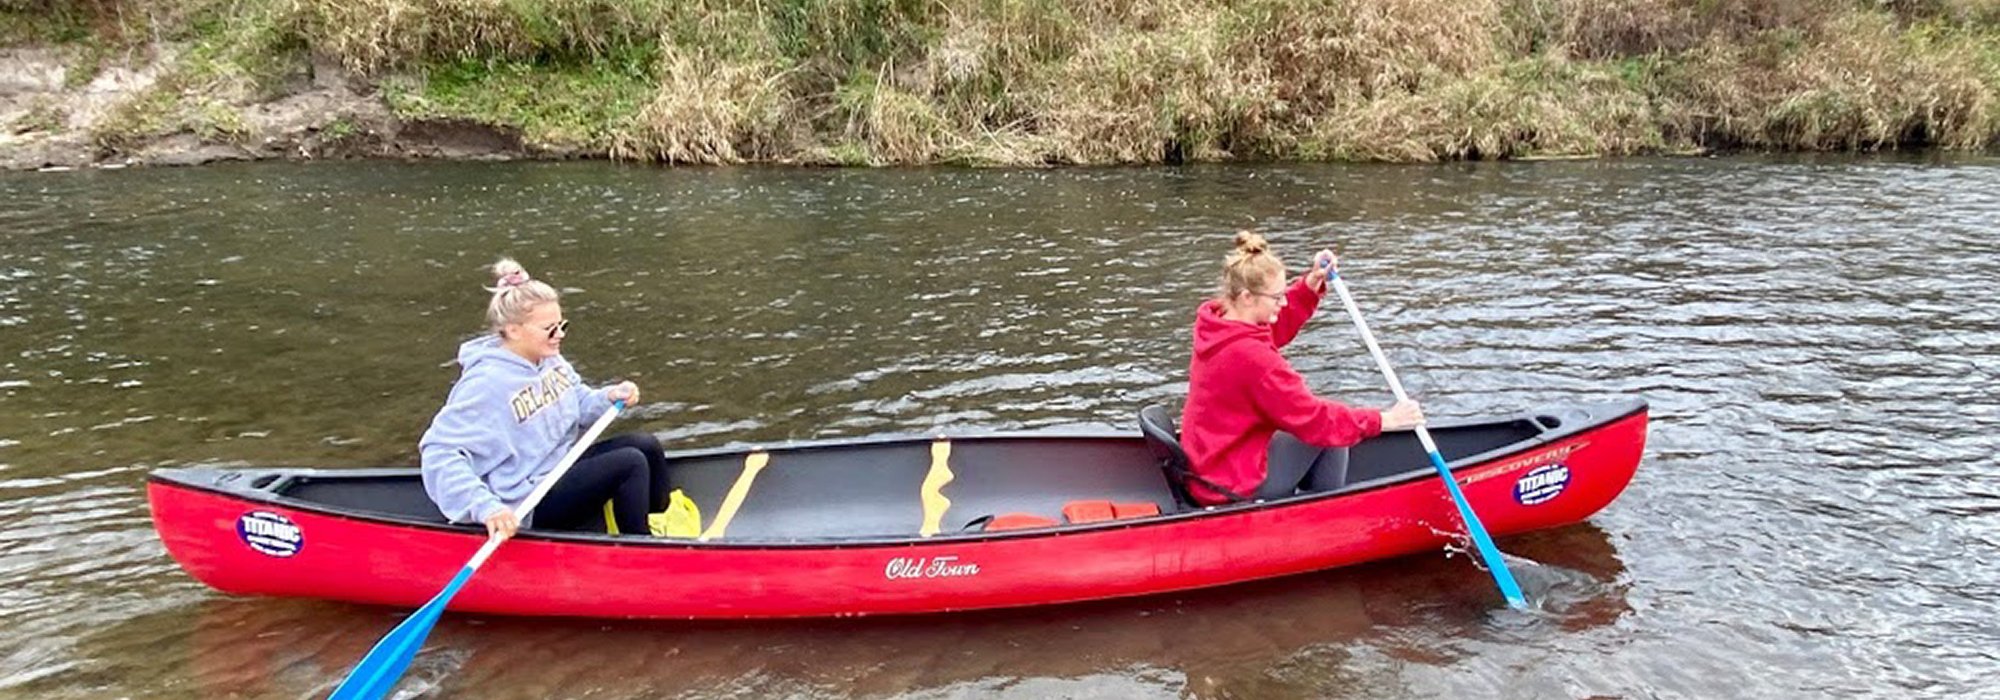 Canoe, Kayak & Tubing Trip Information